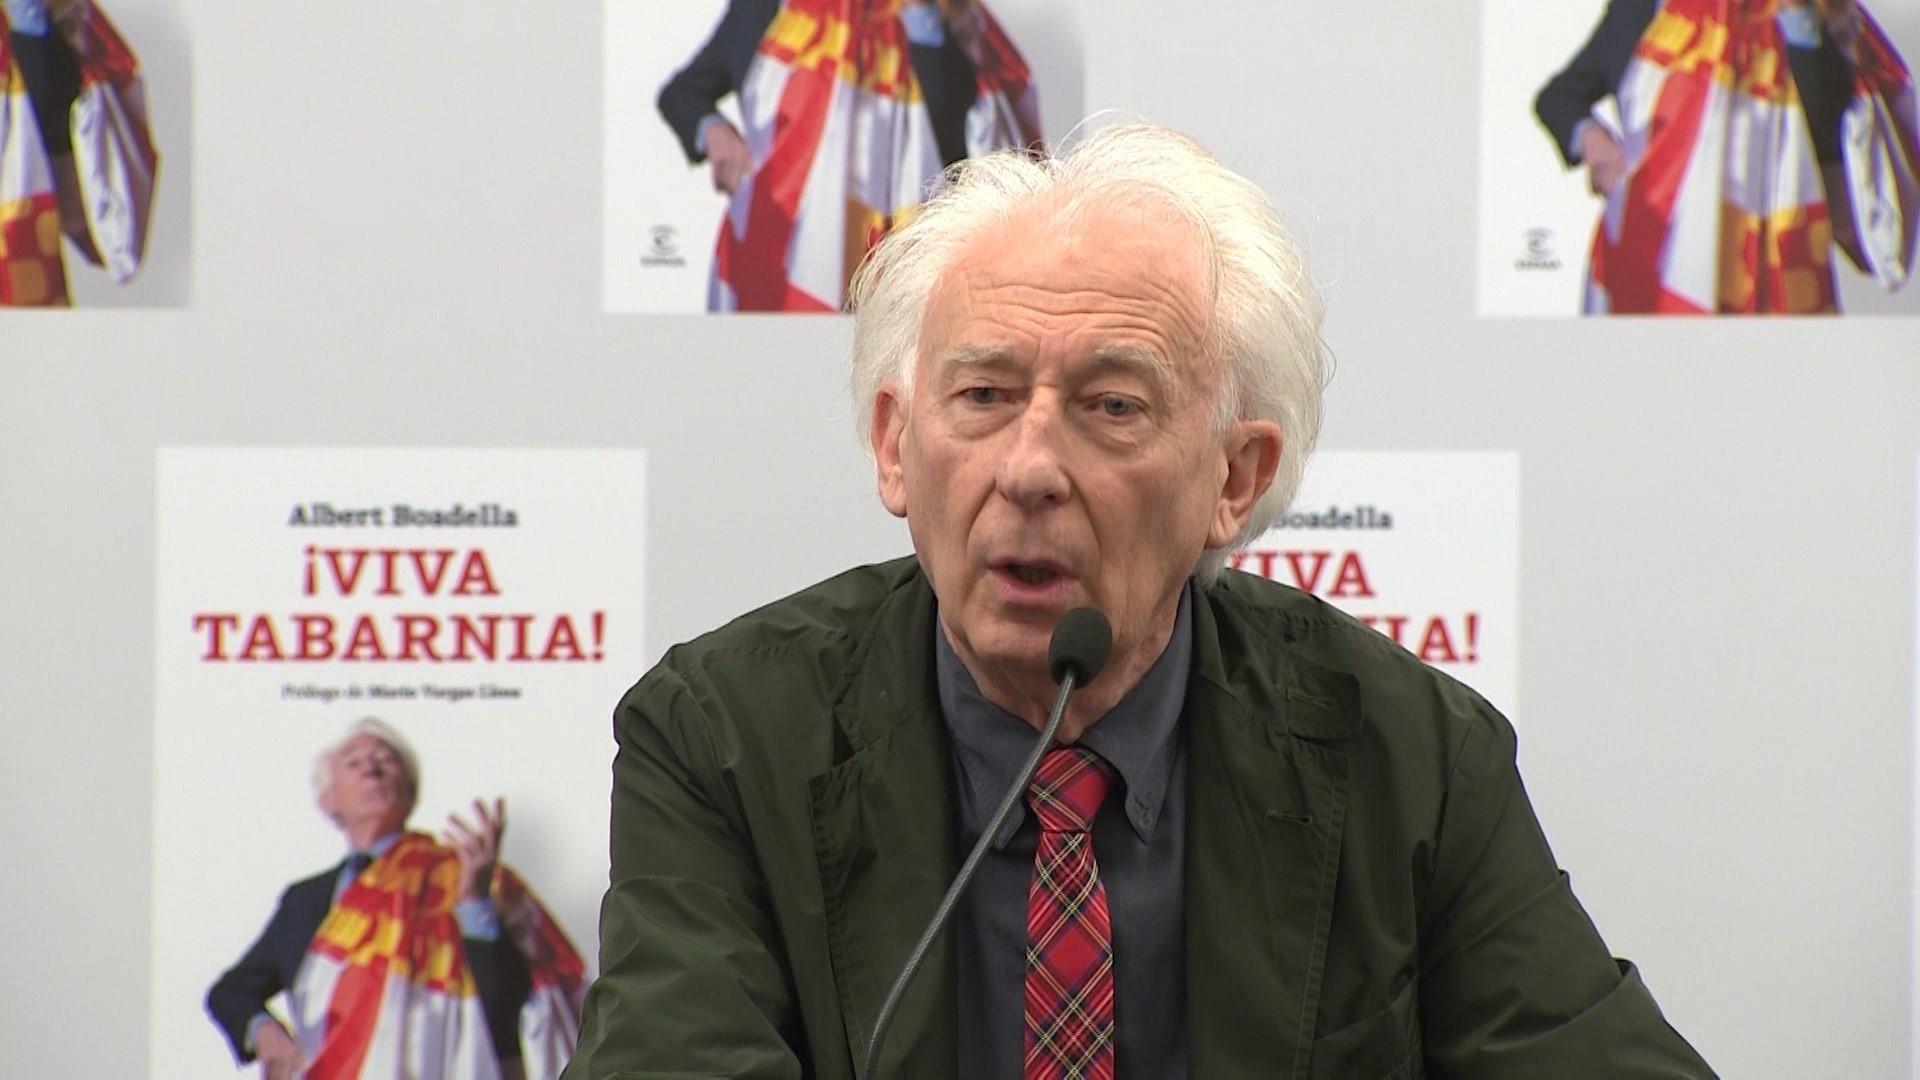 Albert Boadella durante la presentación de su libro '¡Viva Tabarnia!'. Fuente: EP.